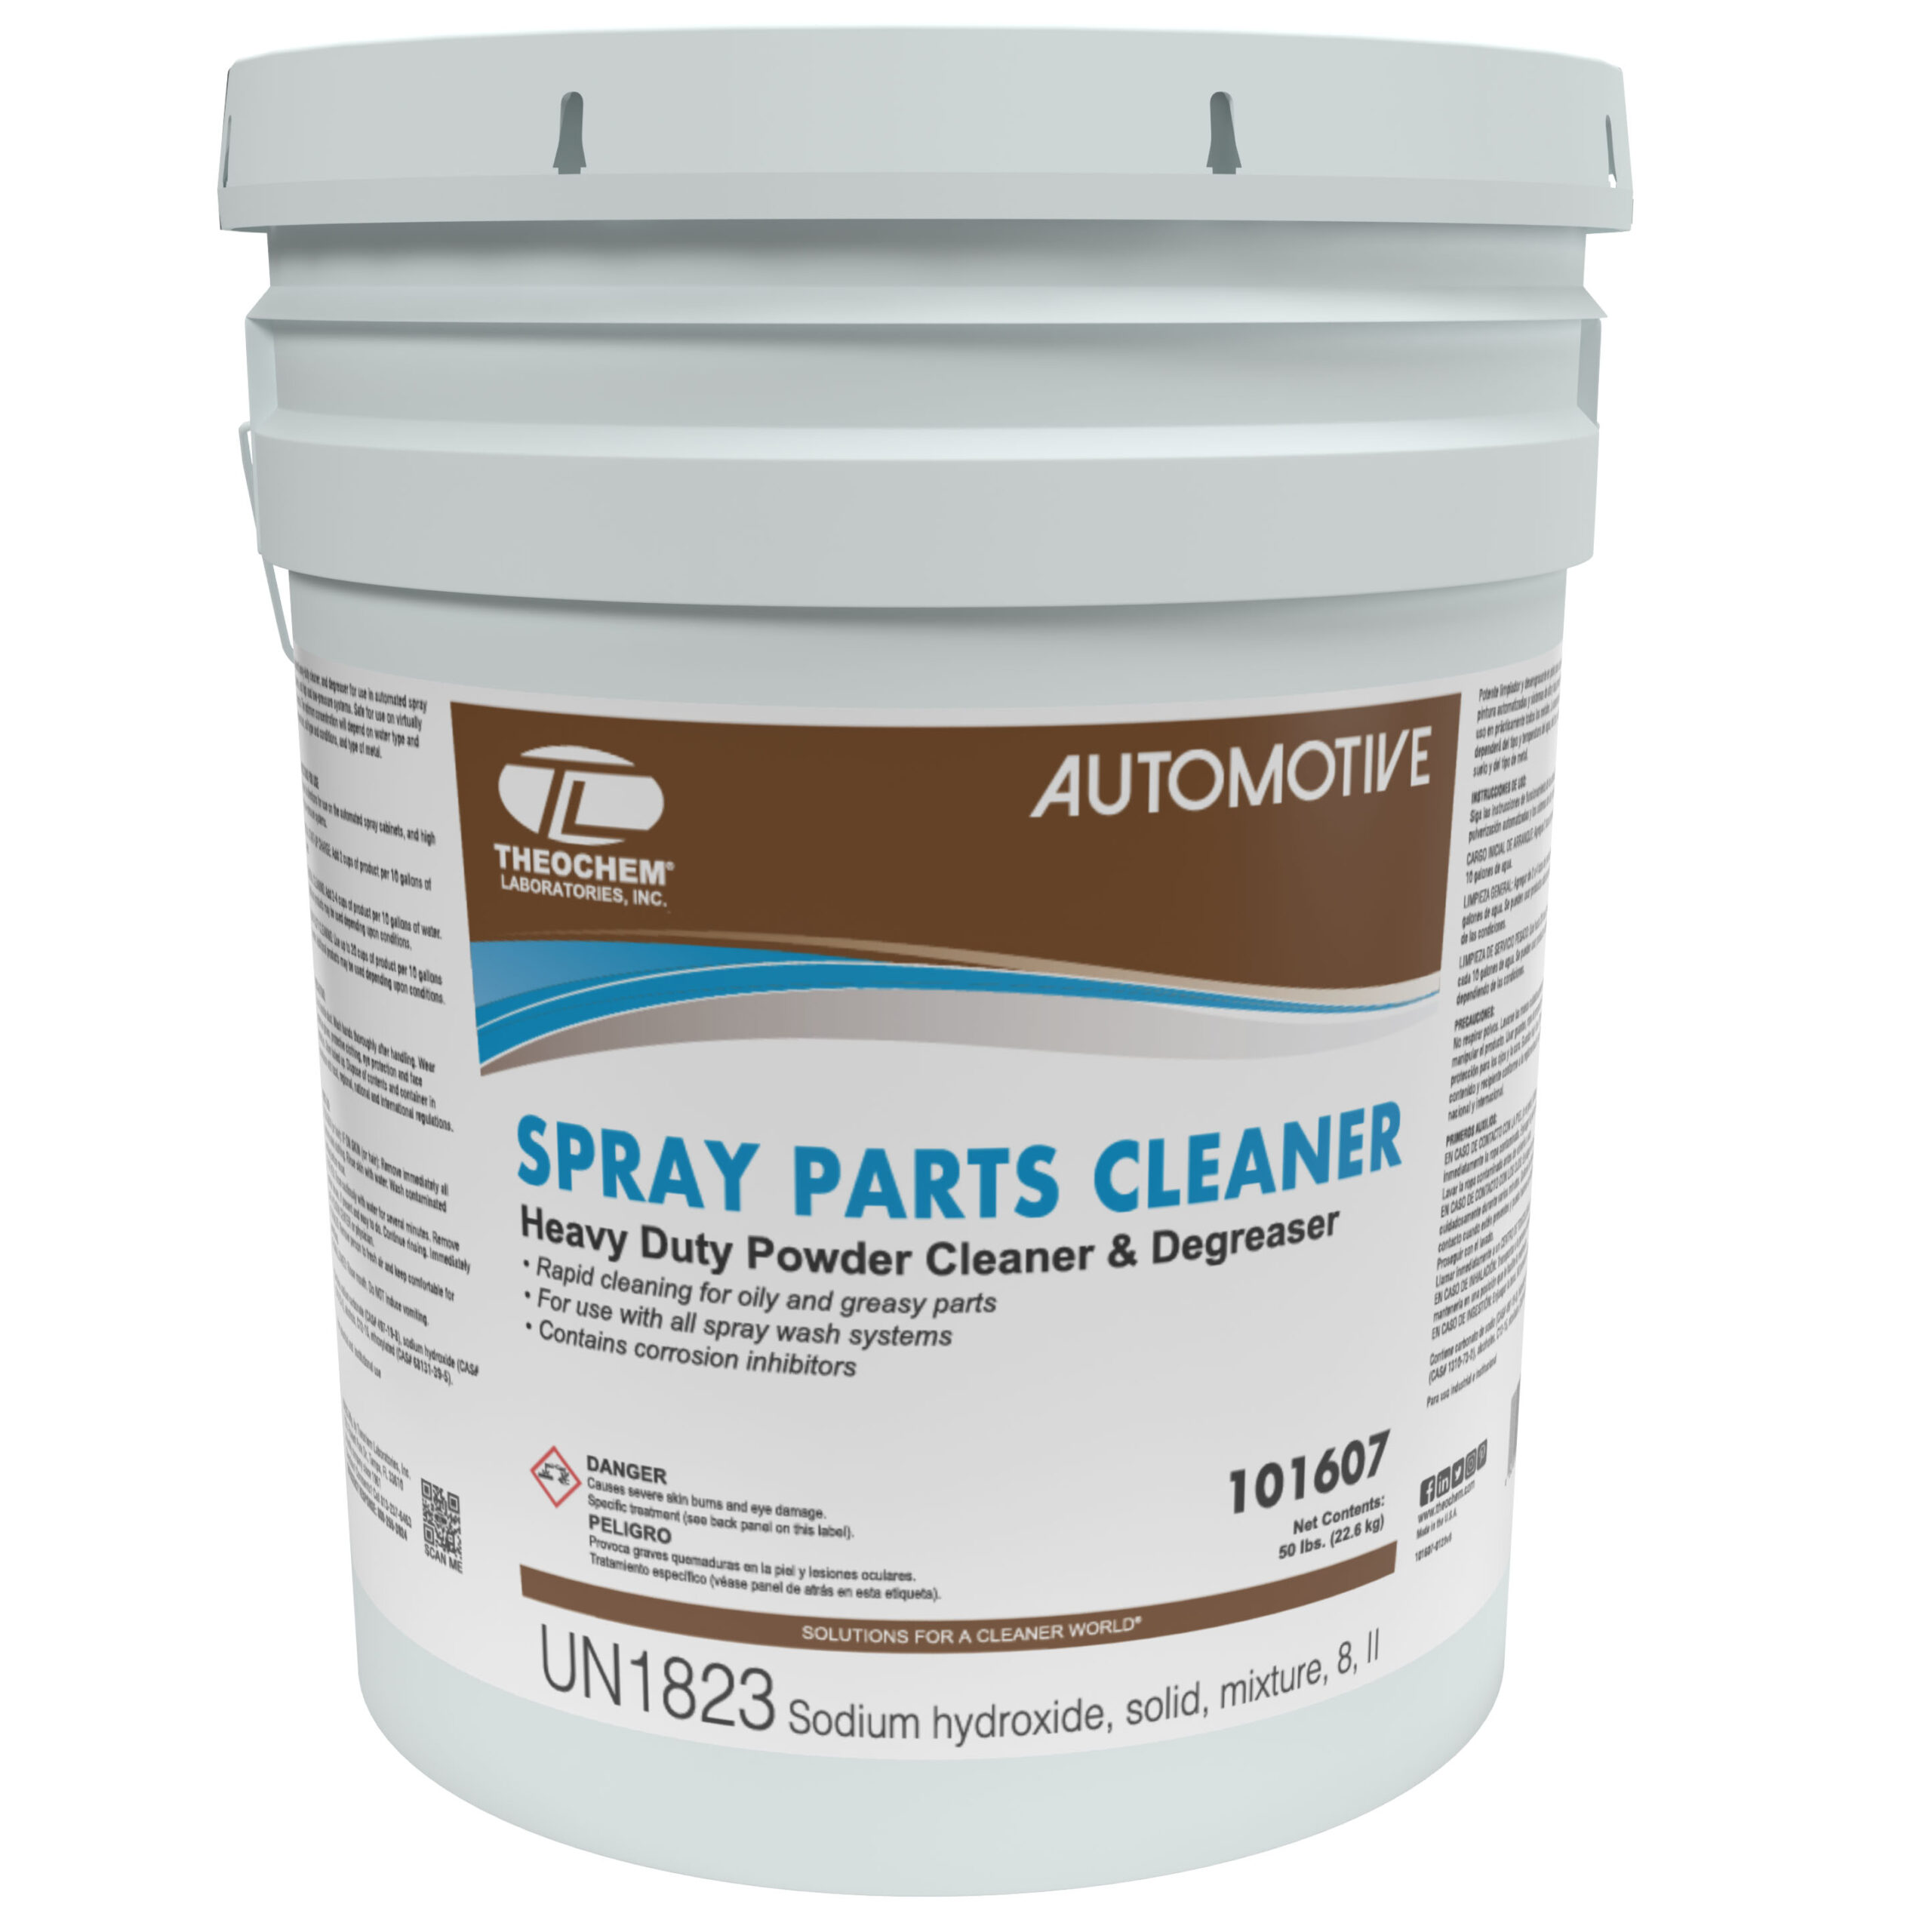 Spray Parts Cleaner - Theochem Laboratories